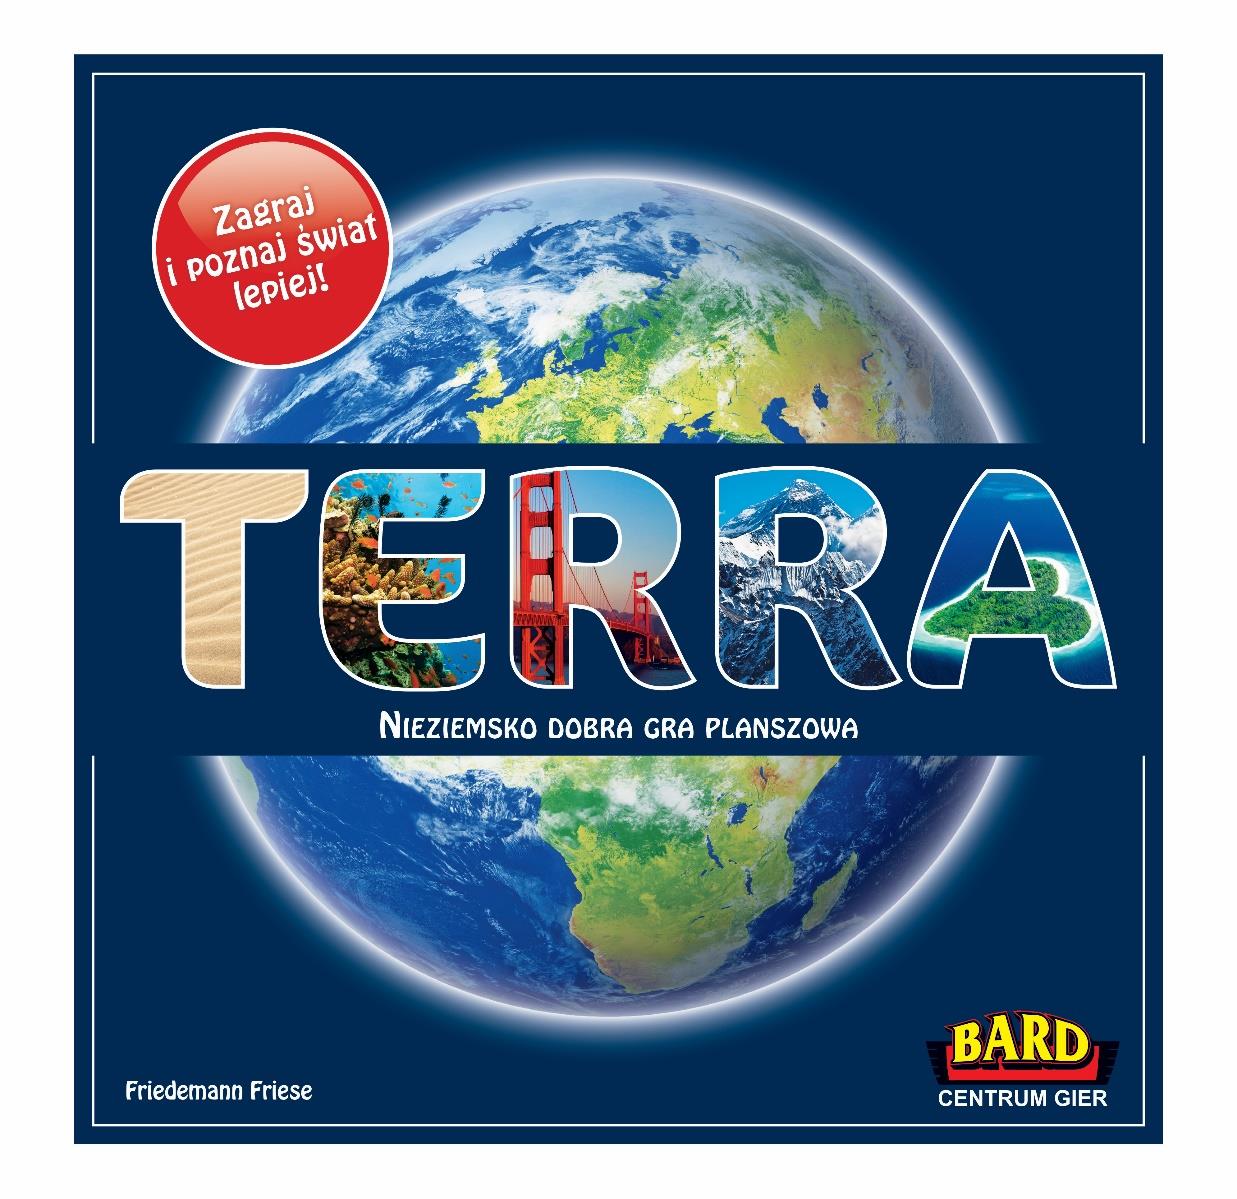 150 pkt. Terra to wspaniałe źródło wiadomości o świecie i jego cudach.